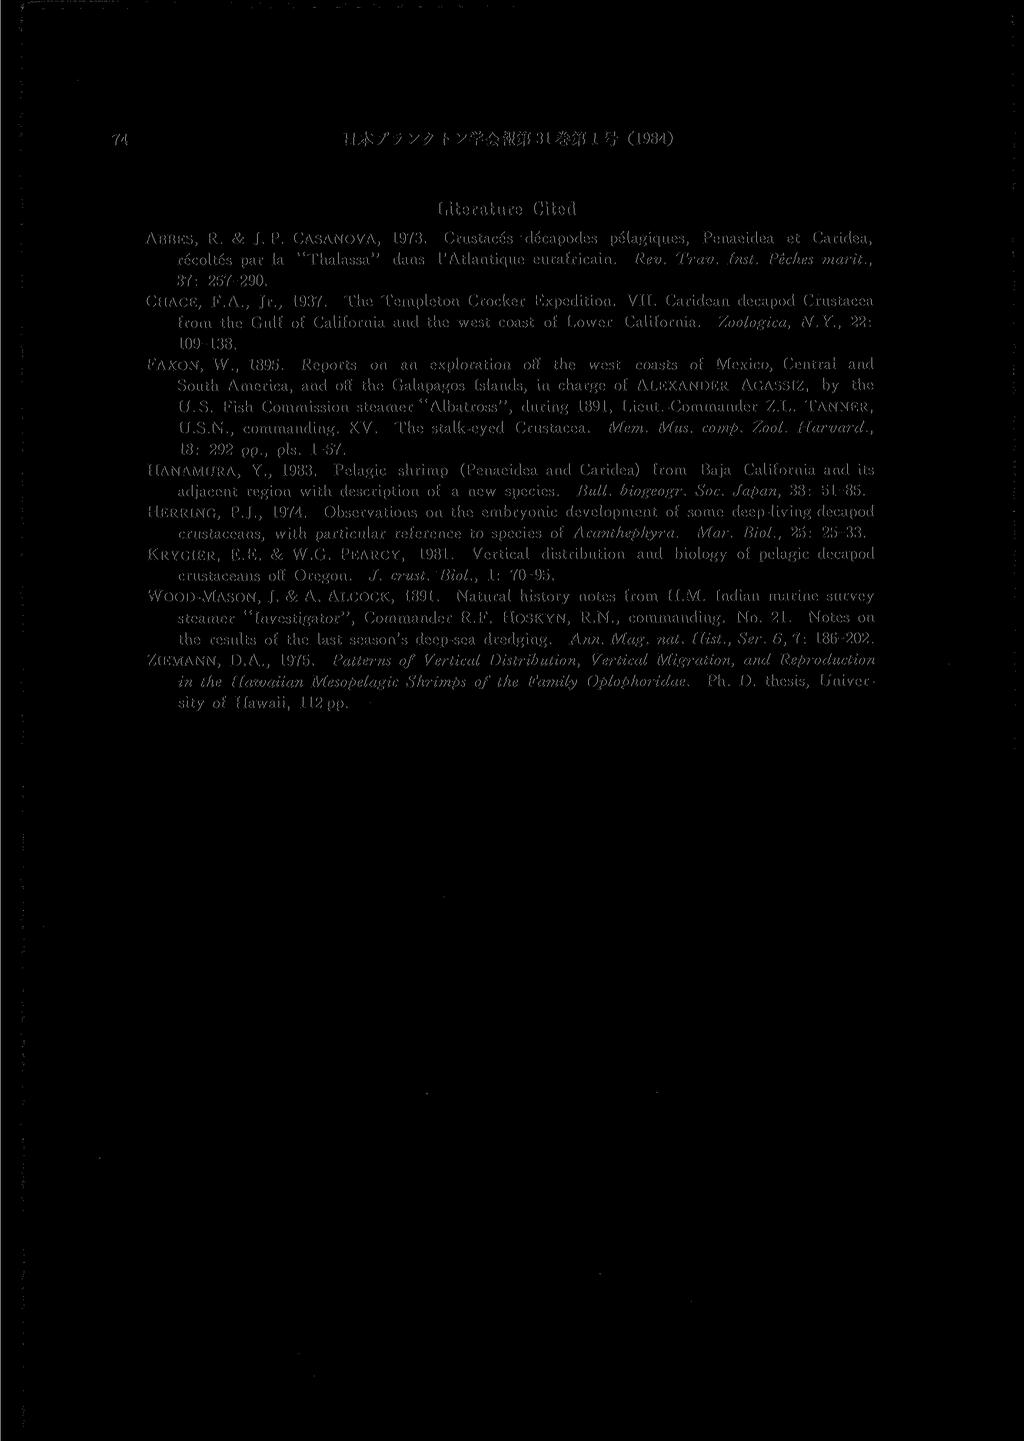 BX-fyy? h y ^ m m 31 1 # (1984) ABBES, R. & J. P. CASANOVA, 1973. Literature Cited Crustaces decapodes pelagiques, Penaeidea et Caridea, recoltes par la "Thalassa" dans l'atlantique eurafricain. Rev.